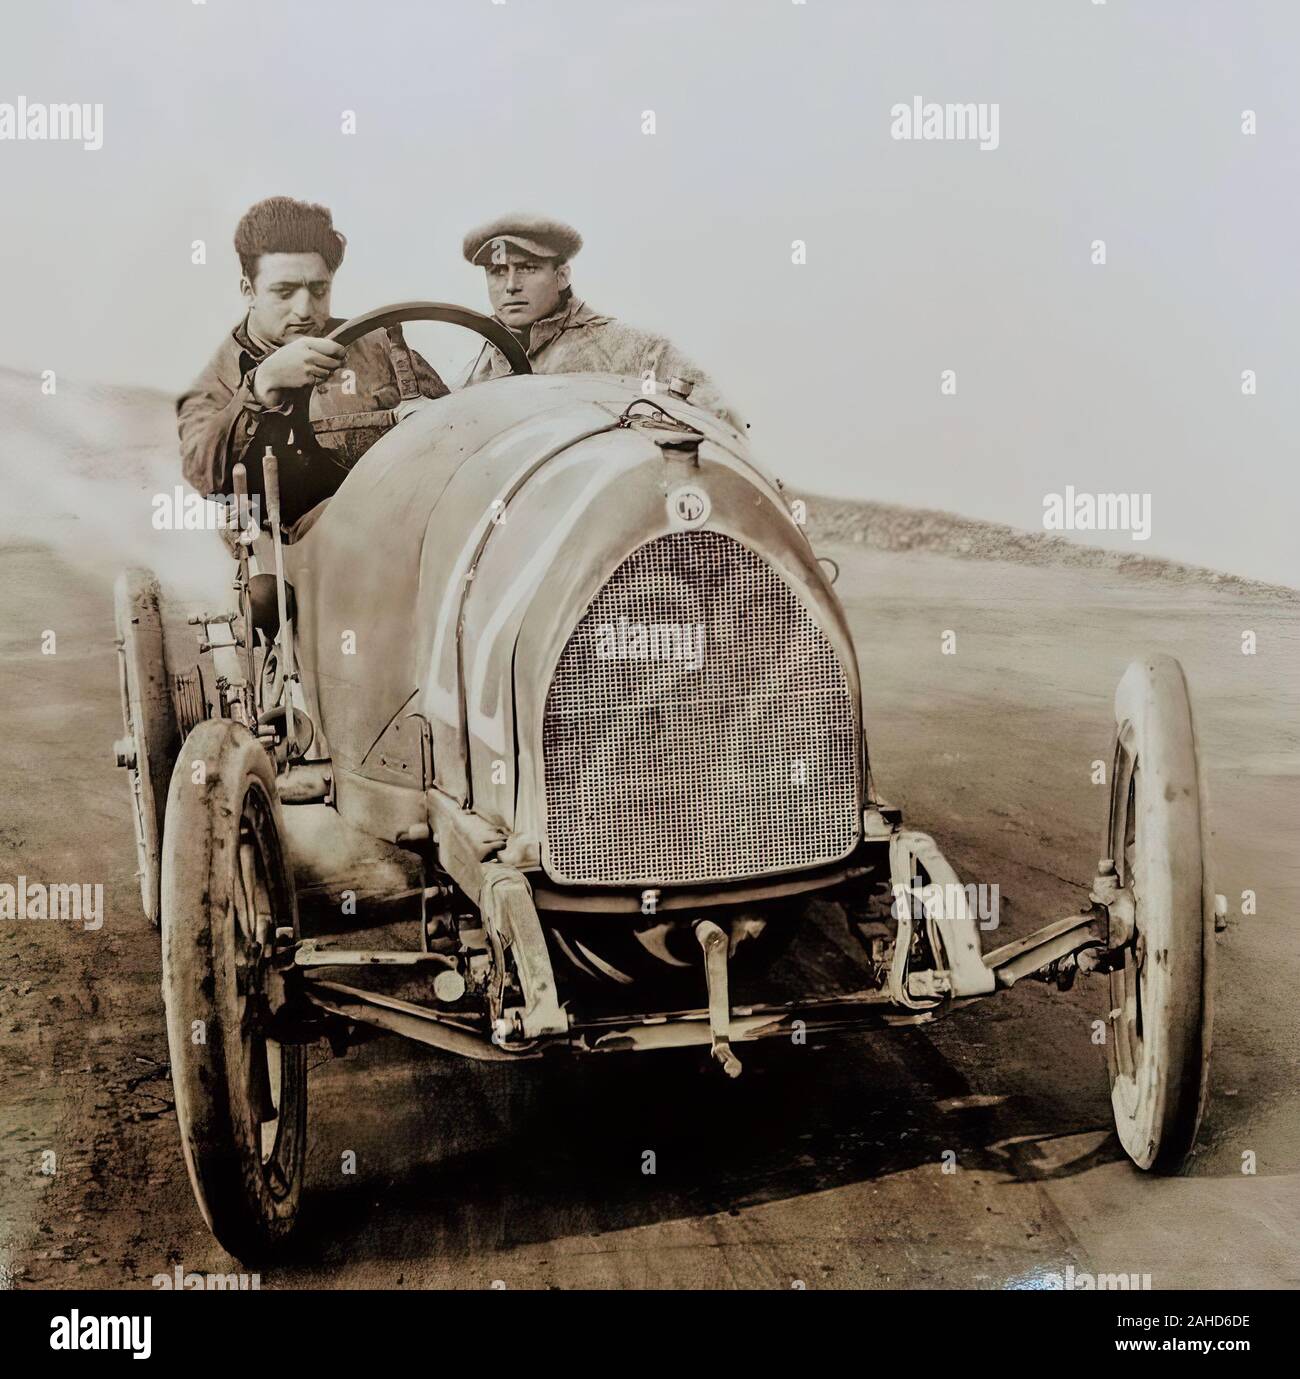 Enzo Ferrari nella sua prima gara in assoluto come un autista professionale per la C.M.N. (Costruzioni Meccaniche nazionali), Parma-Poggio di Berceto hillclimb race 1919. Egli ha finito quarto Foto Stock